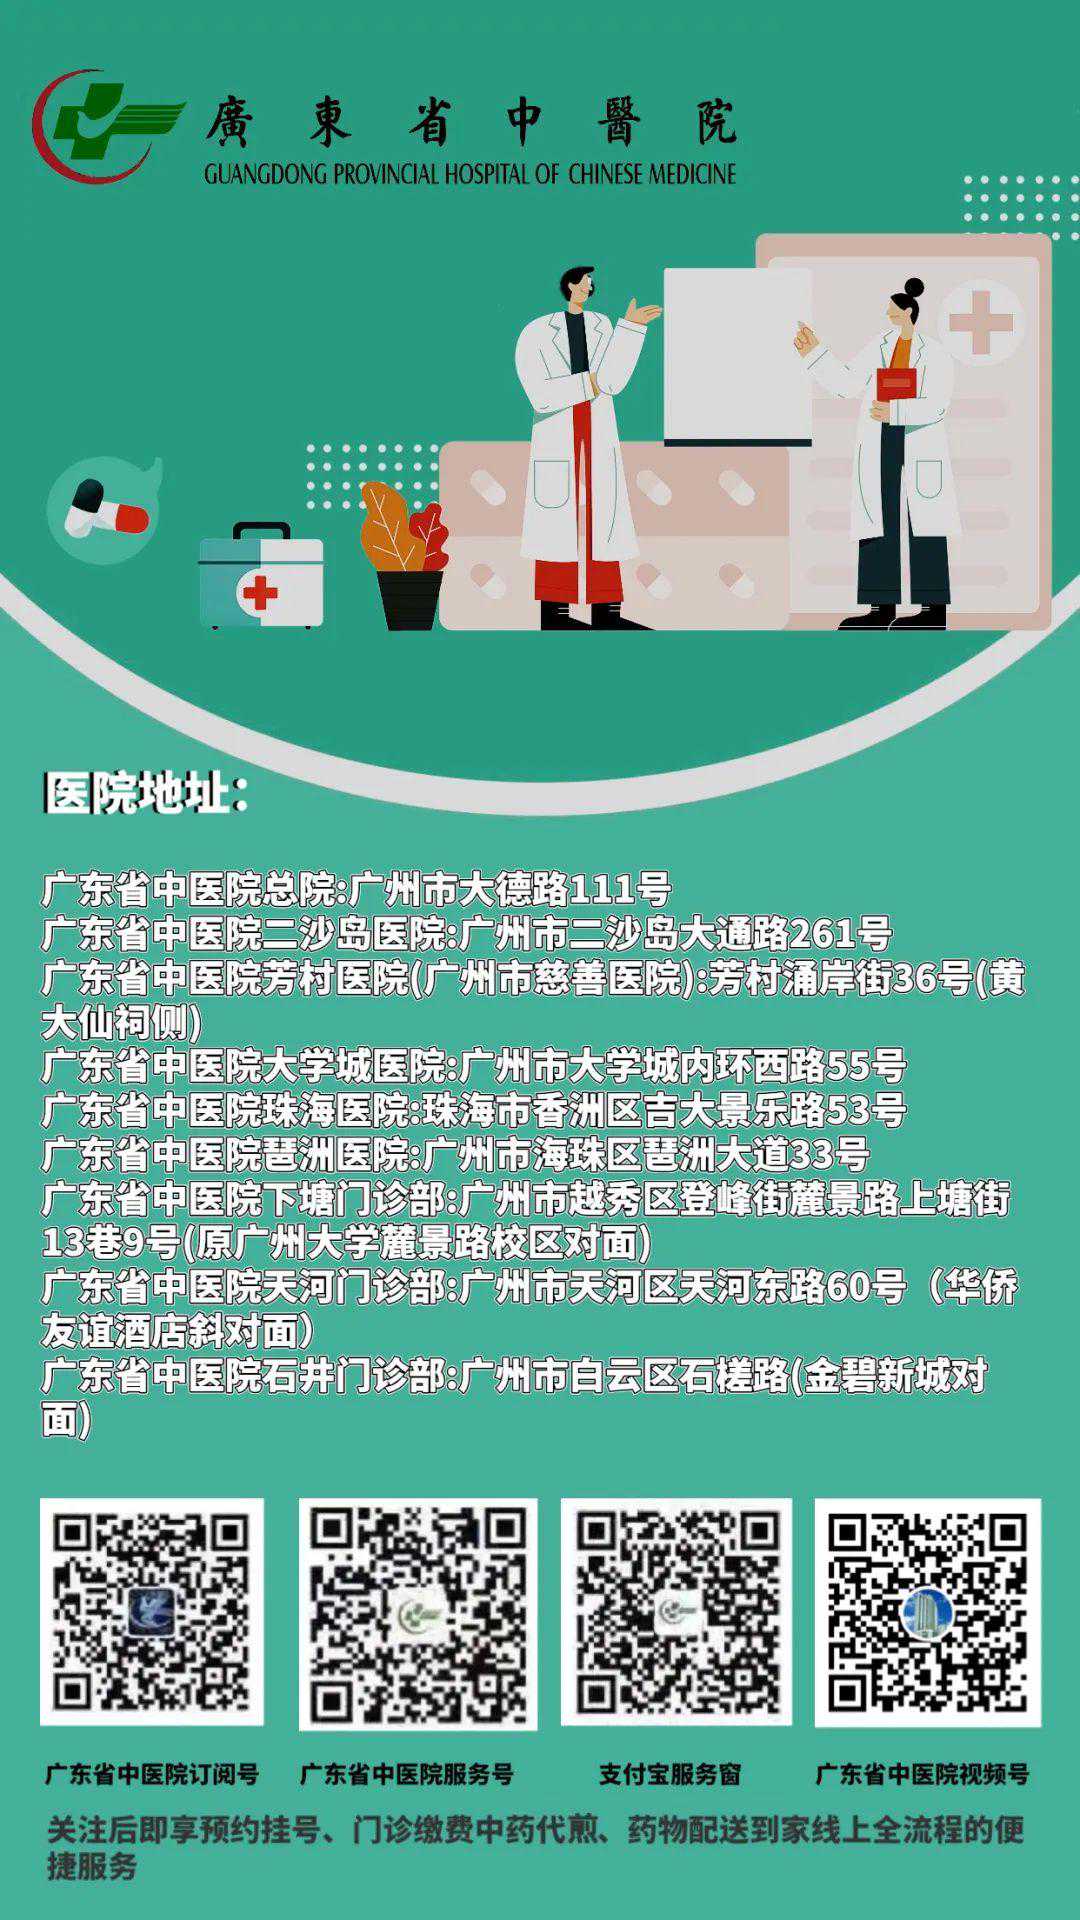 怎样去香港医院验血,医讯 - 广东省中医院石井门诊部举行“不孕不育与生殖健